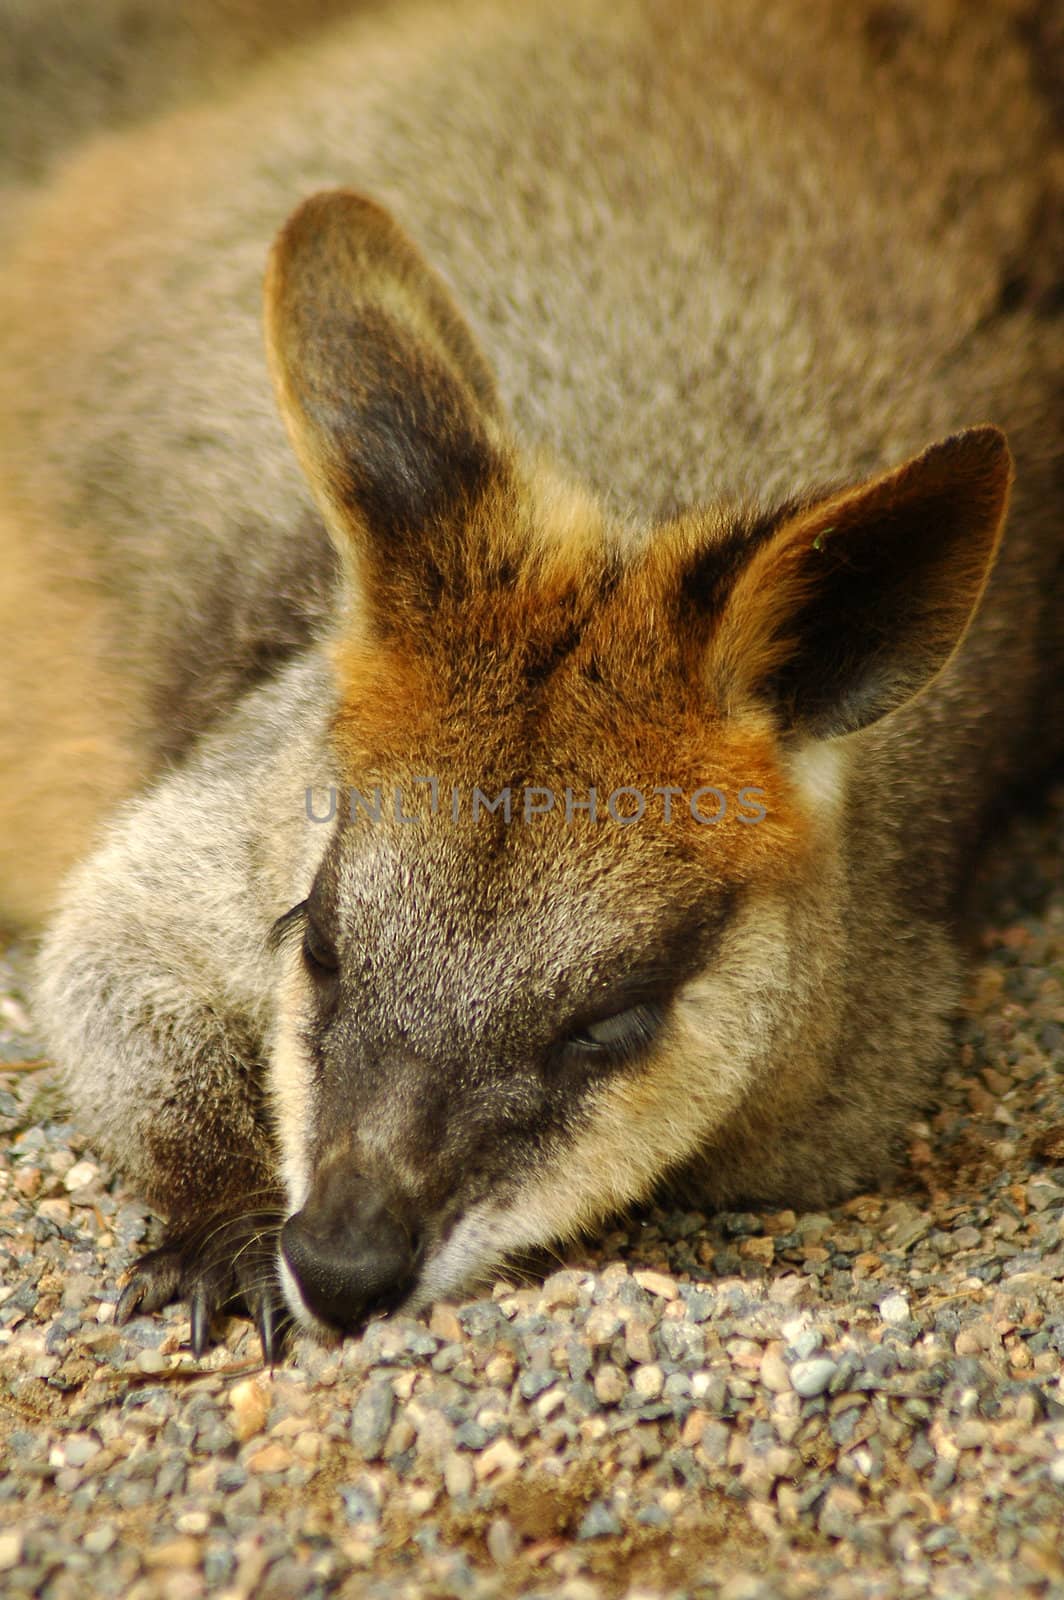 brown kangaroo resting on gravel, photo taken in sydney